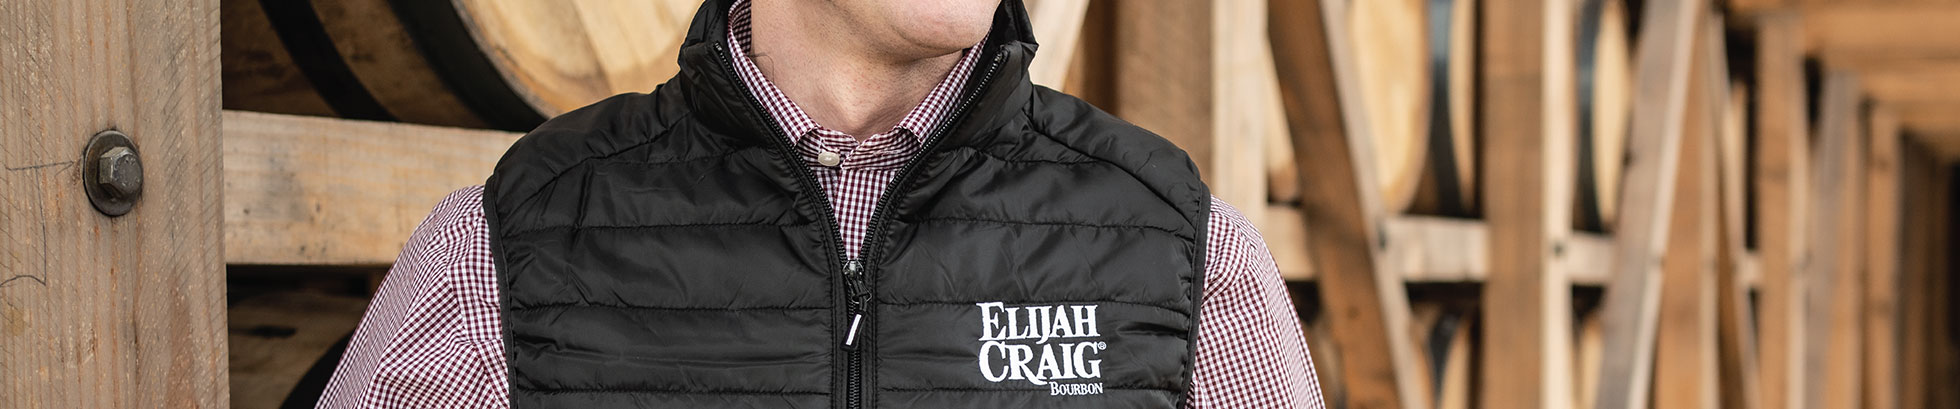 Elijah Craig Mens Vest